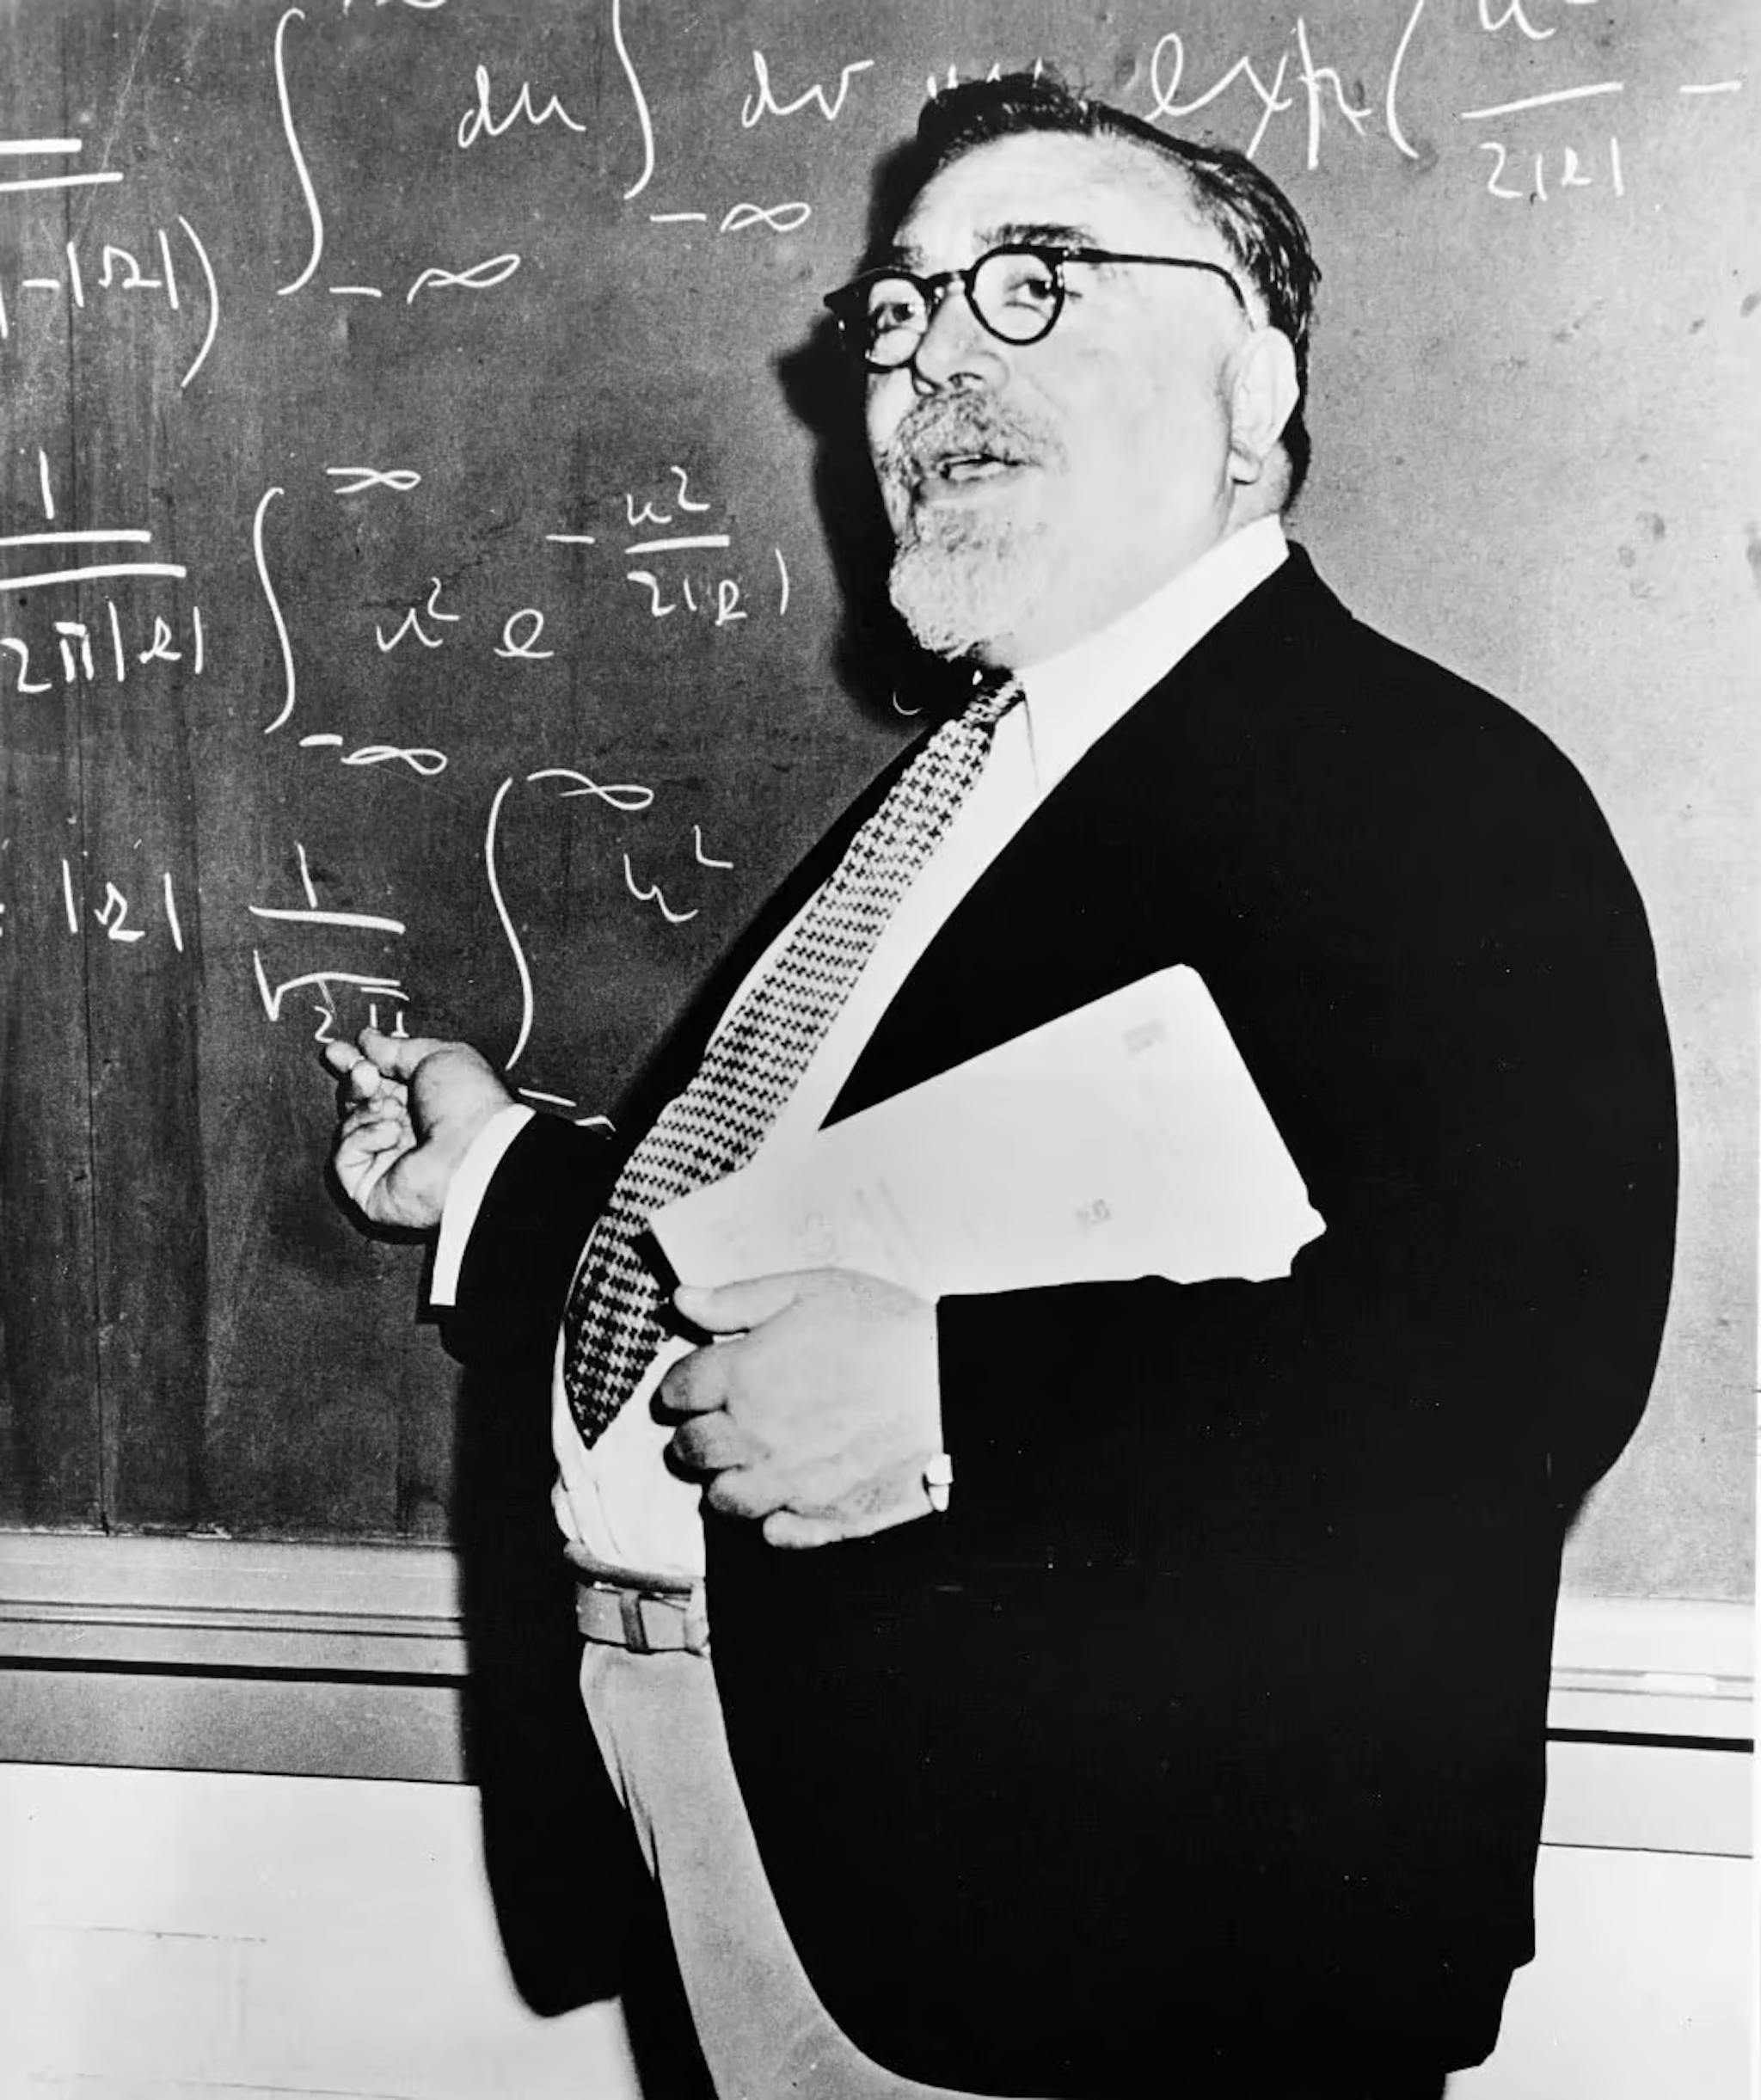 Norbert Wiener (1894-1964) leistete bedeutende Beiträge zu stochastischen Prozessen, elektronischer Technik und Kontrollsystemen. Er begründete die Kybernetik und stellte die Theorie auf, dass Rückkopplungsmechanismen zu intelligentem Verhalten führen, und legte damit den Grundstein für die moderne KI.